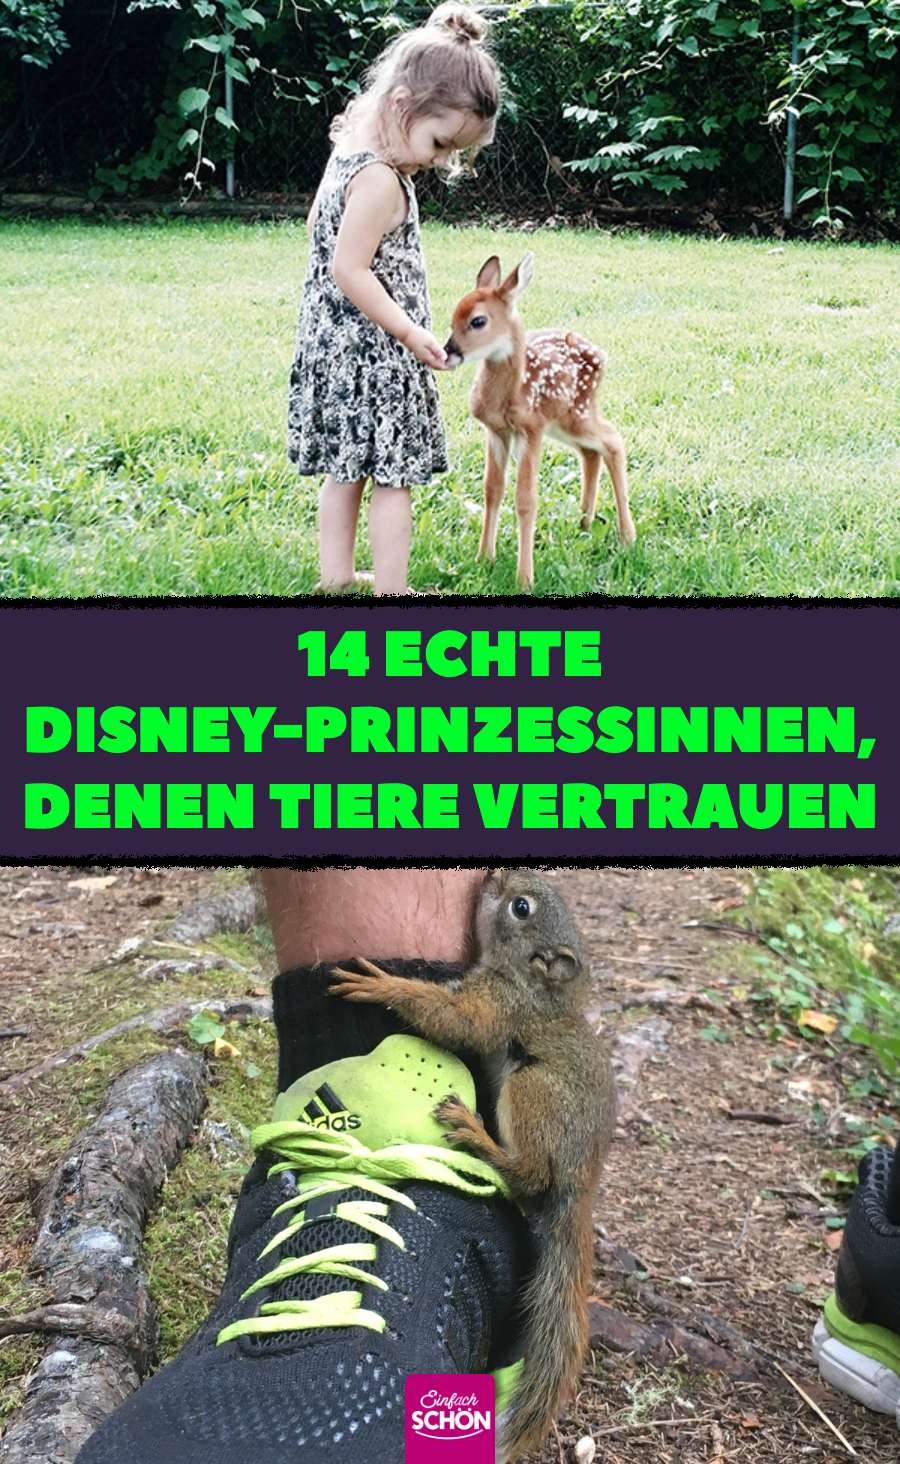 Disney-Prinzessin: 14 niedliche und zutrauliche Tiere